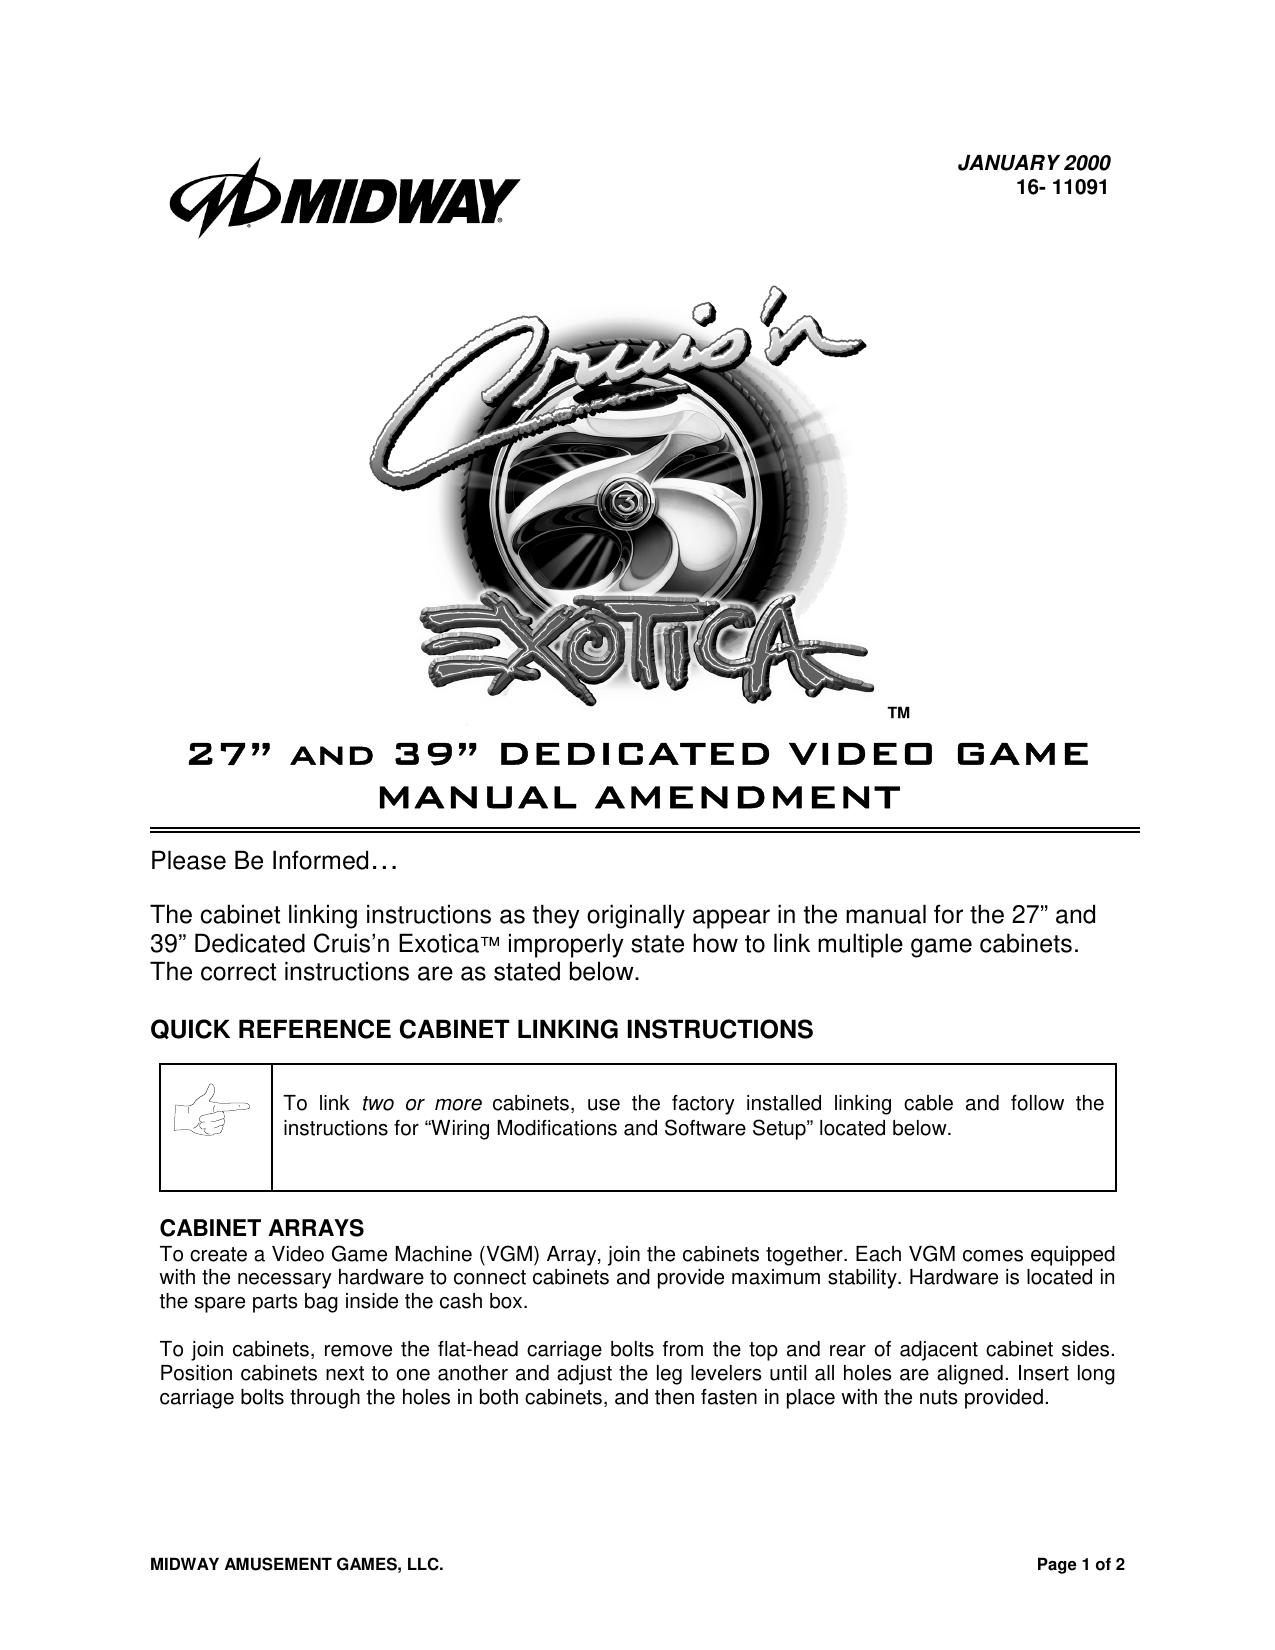 SpaceInvadersPt2 Manual